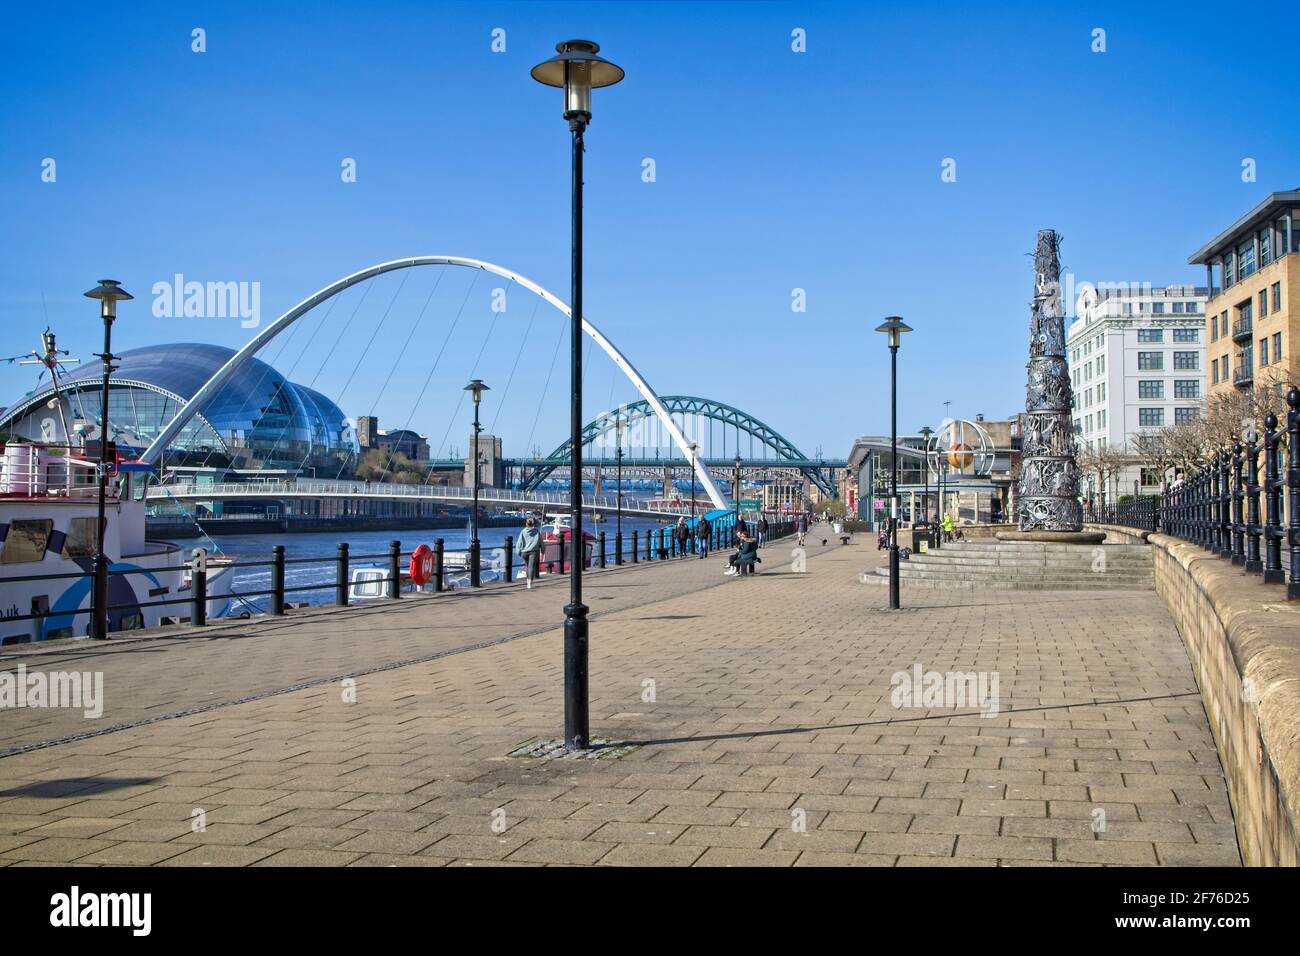 Immagine del paesaggio guardando il Quayside di Newcastle verso il Gateshead Millennium Bridge e il Tyne Bridge a Tyne and Wear, Inghilterra nord-orientale. Foto Stock